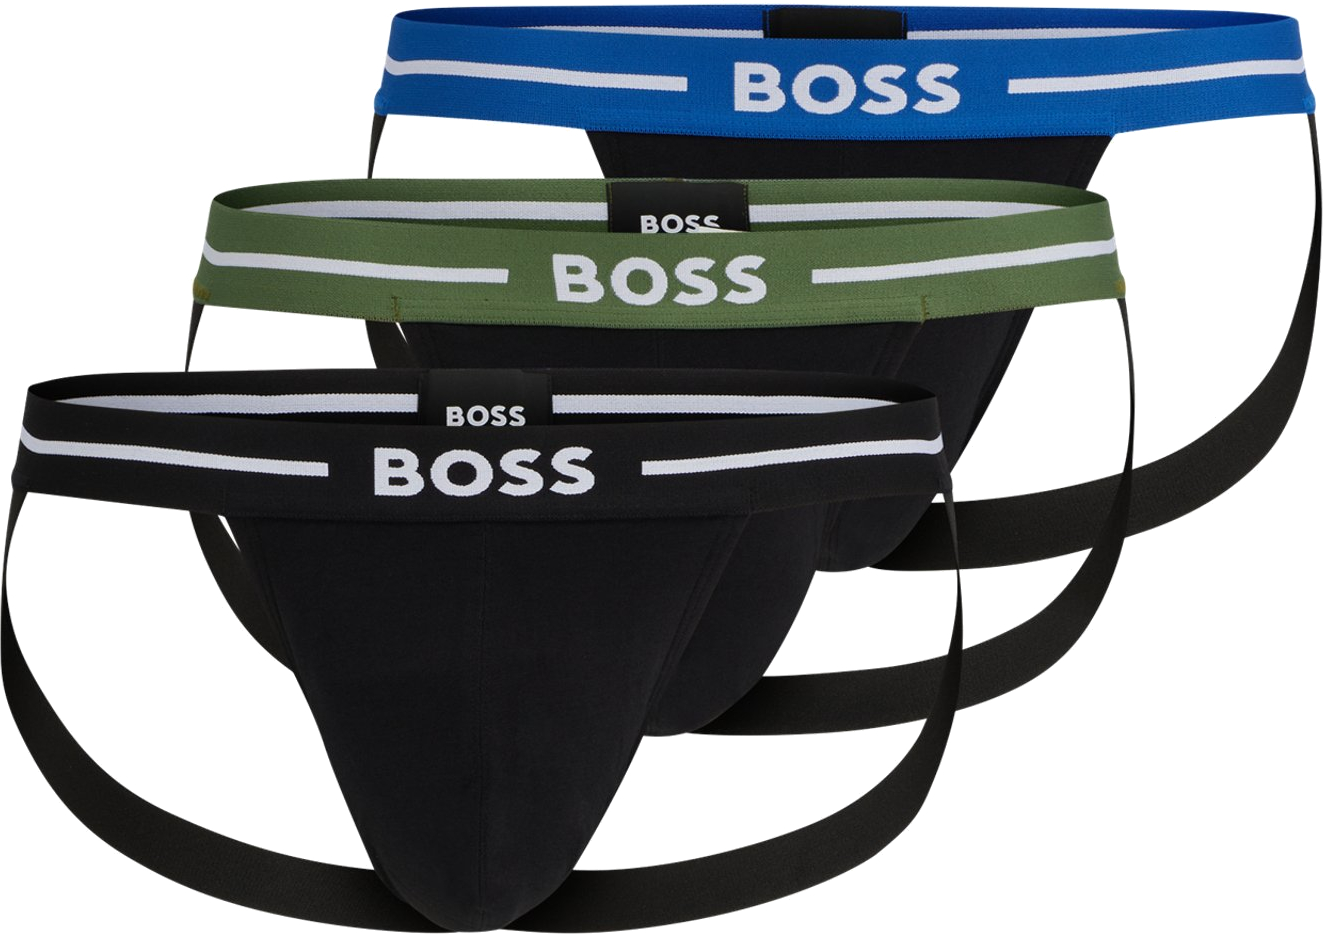 Hugo Boss 3 PACK - pánske slipy BOSS JOCK STRAP 50514965-965 XL